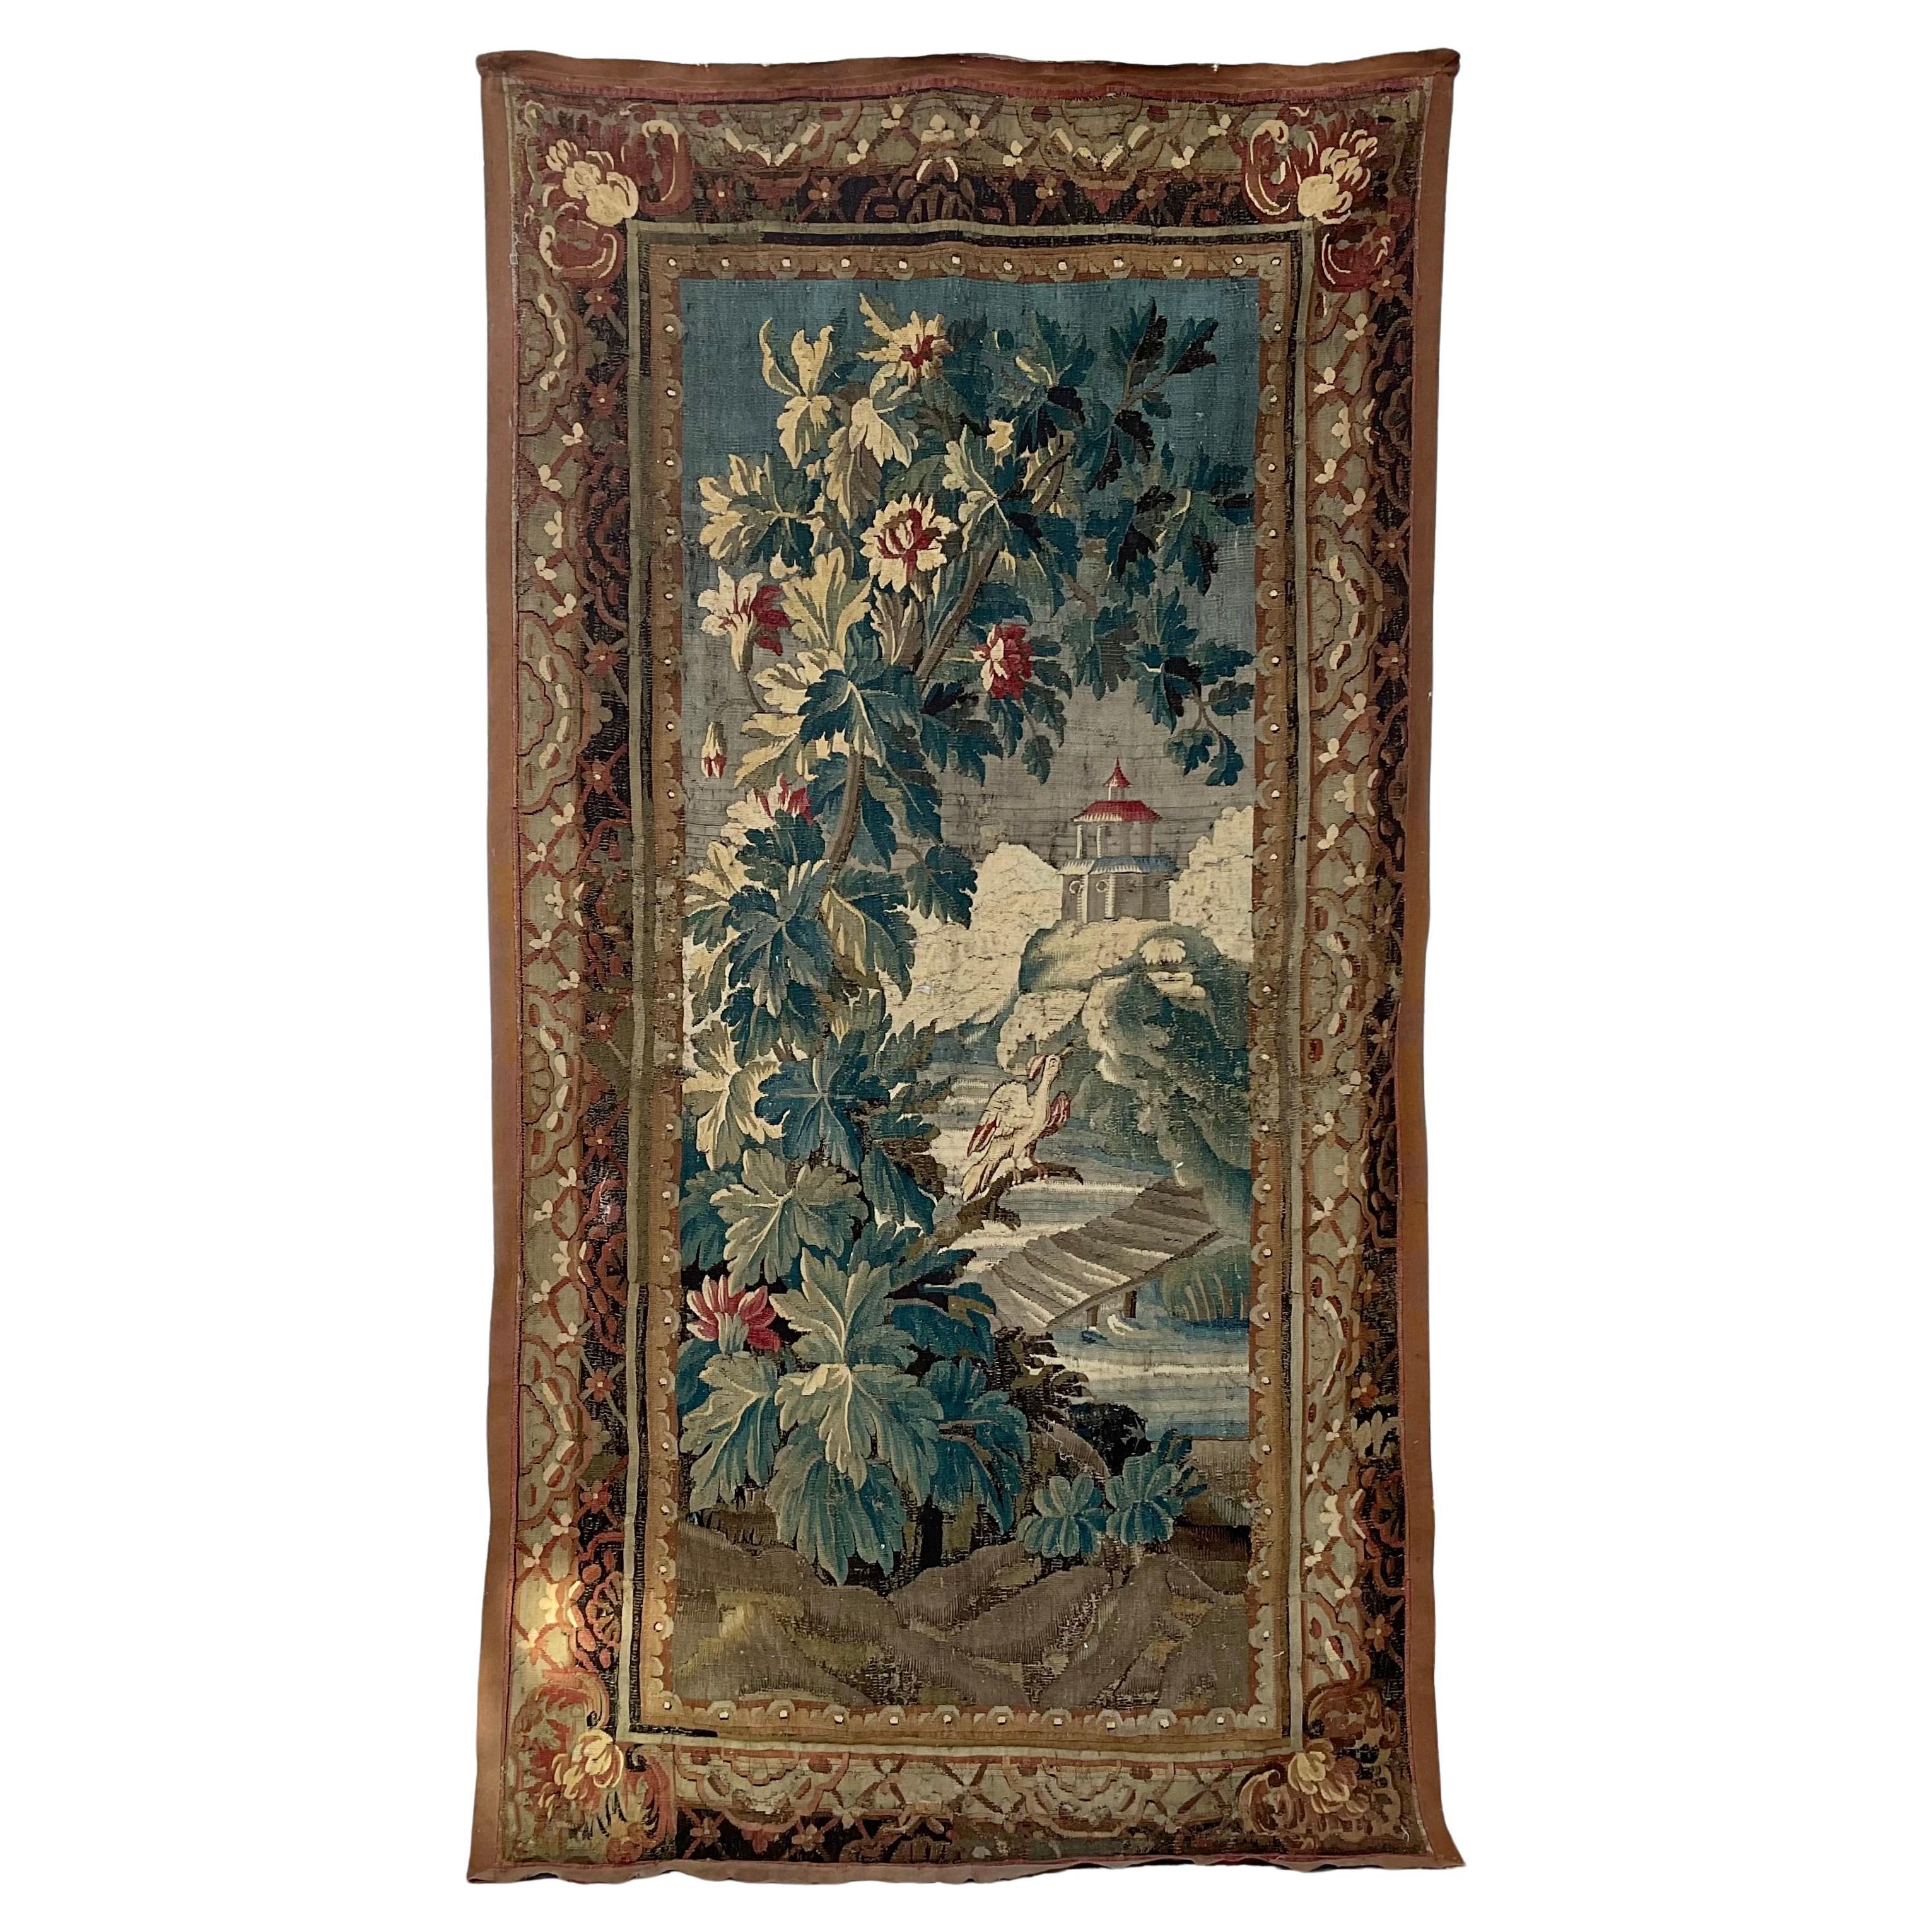 Ancienne tapisserie française tissée à la main au XVIIIe siècle. 
Cette magnifique tapisserie ancienne a été tissée à Aubusson, en France, vers 1760. De forme rectangulaire, cette pièce colorée représente une scène extérieure avec un grand oiseau au